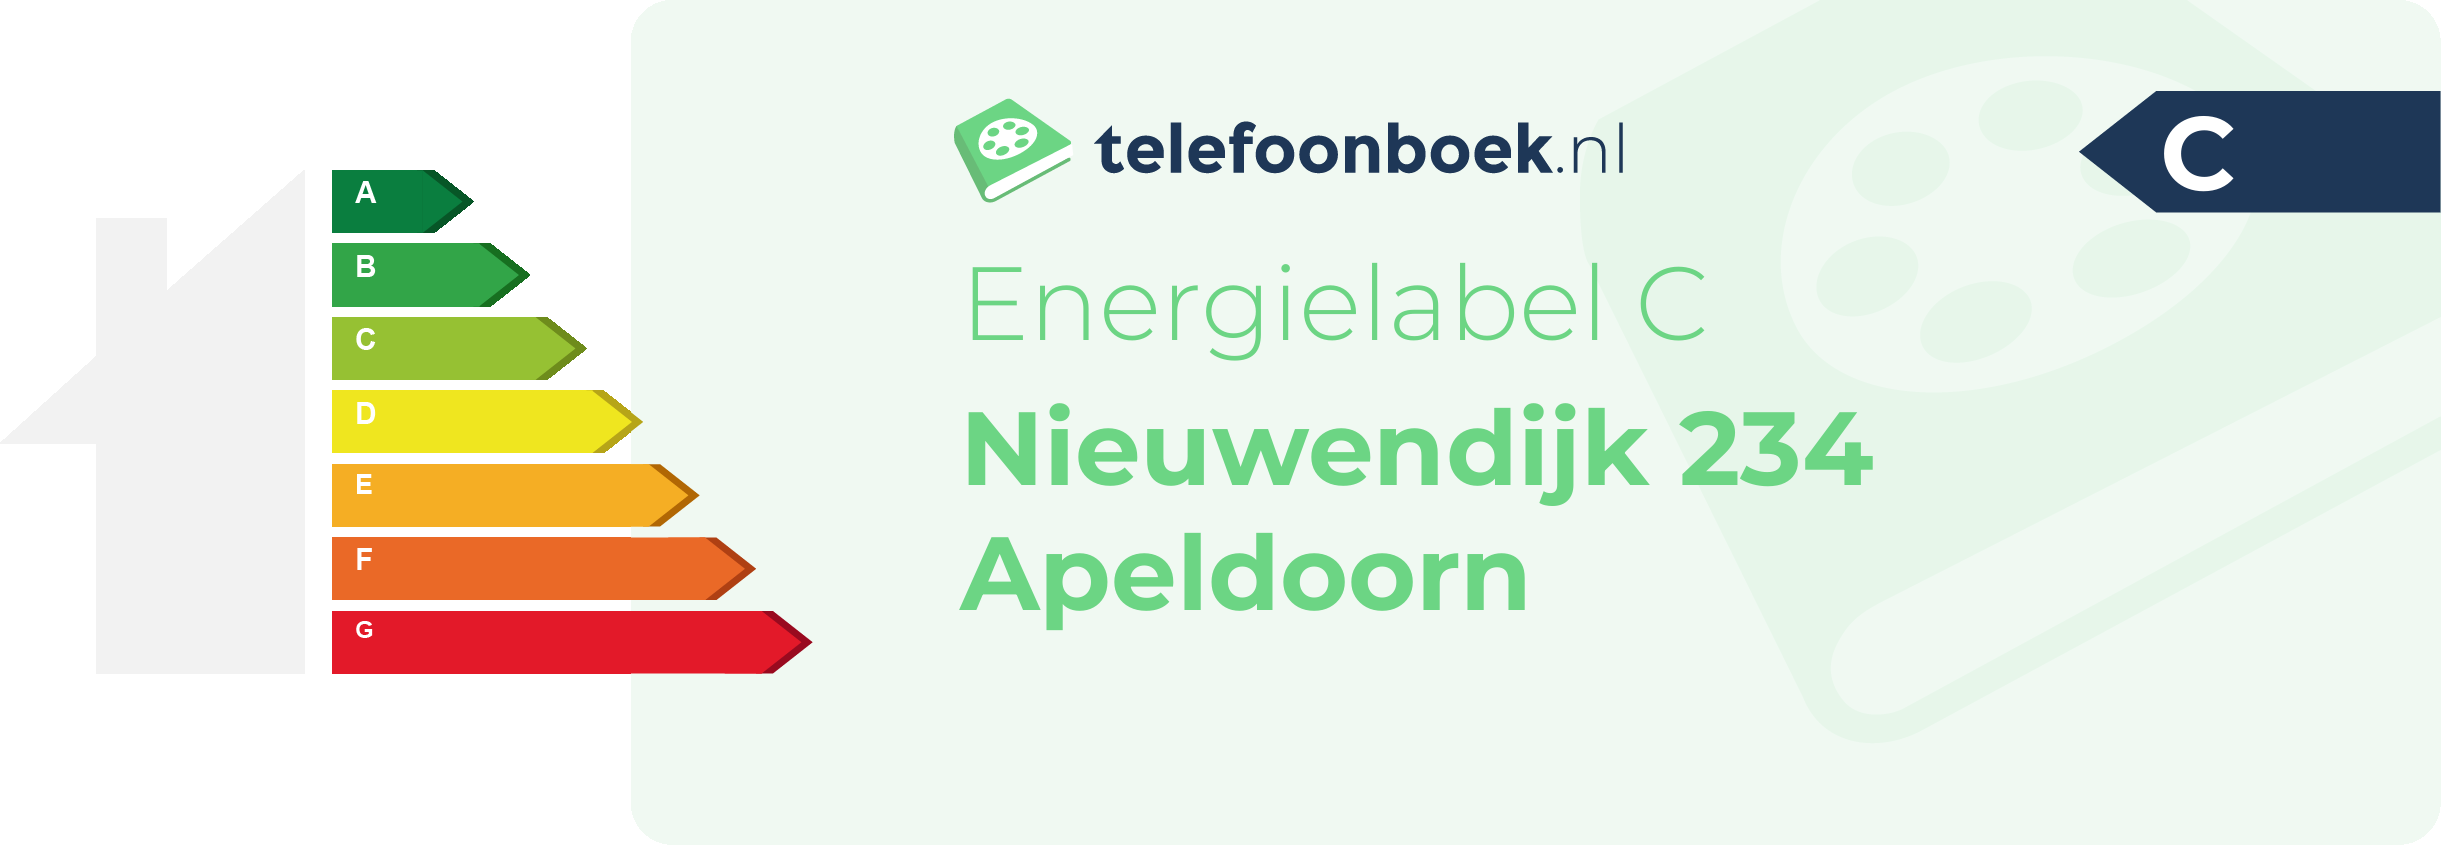 Energielabel Nieuwendijk 234 Apeldoorn